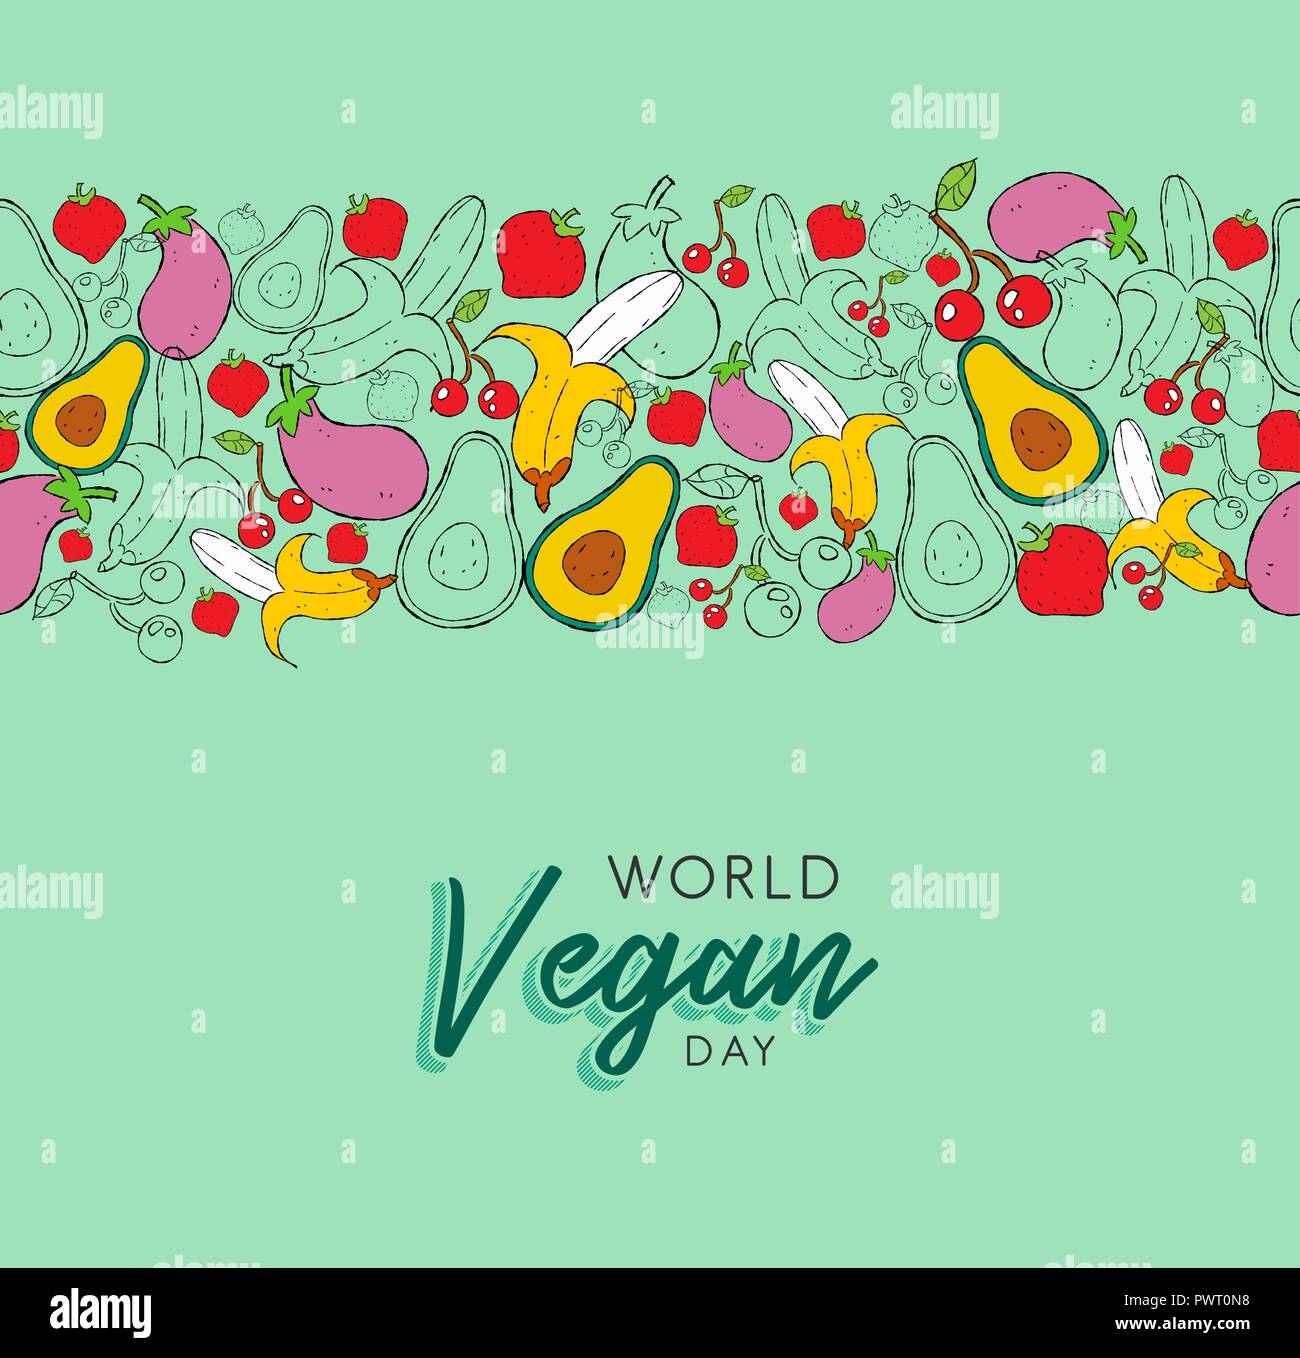 Welt Vegan tag Grußkarte Hintergrund mit Hand gezeichnet Obst und Gemüse Symbole. Gesunde Ernährung oder ausgewogene Ernährung Konzept Hintergrund. Stock Vektor